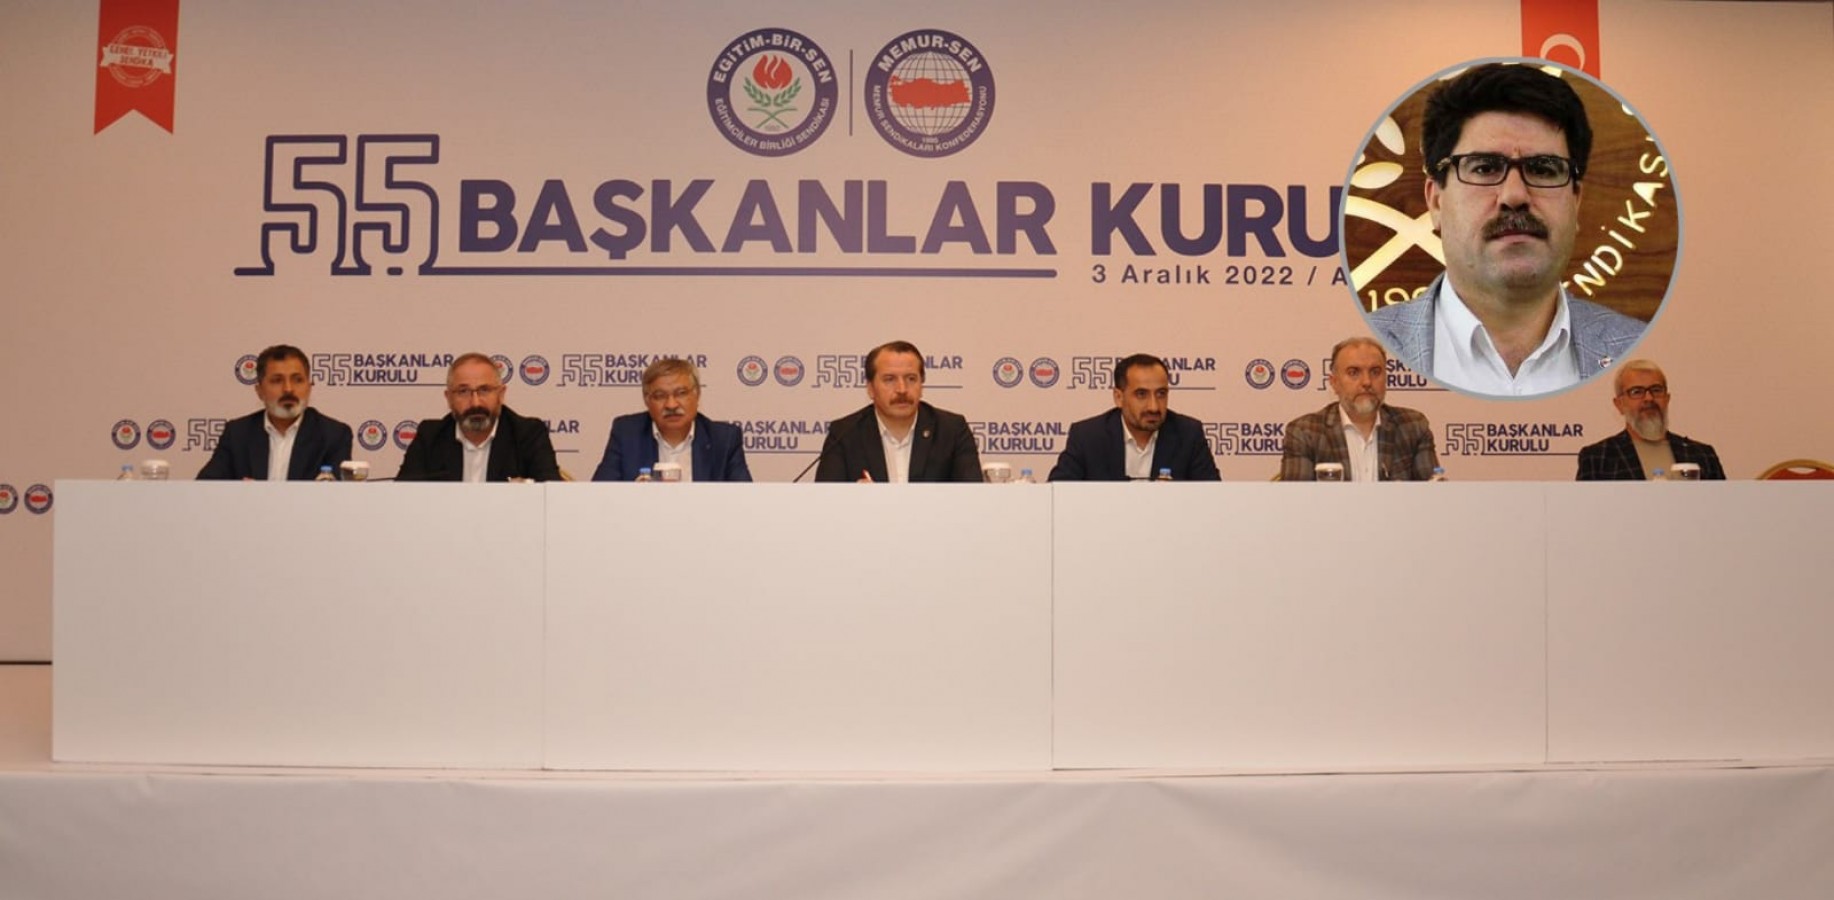 Eğitim sendikasının kurul toplantısı Antalya’da yapıldı;